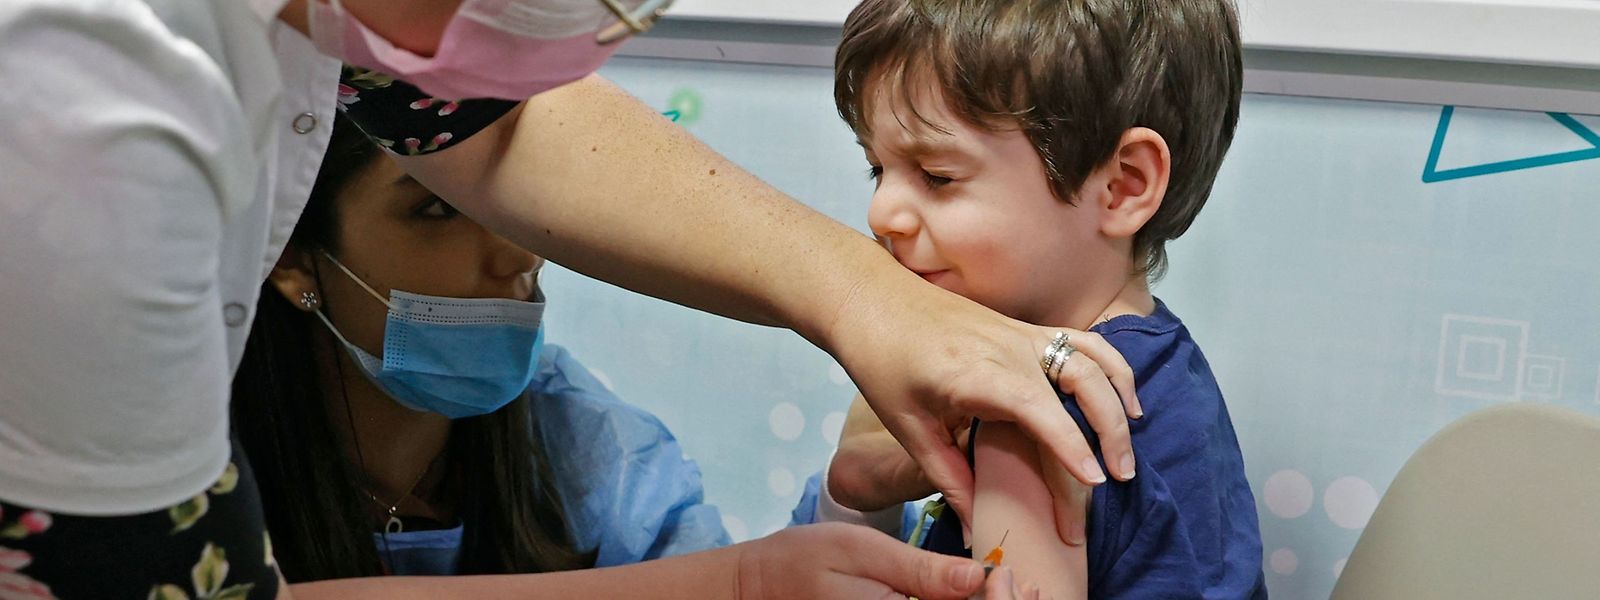 Pour l'heure, en Europe, seule la formule développée par Pfizer/BioNTech a reçu le feu vert des autorités pour vacciner les moins de 12 ans.